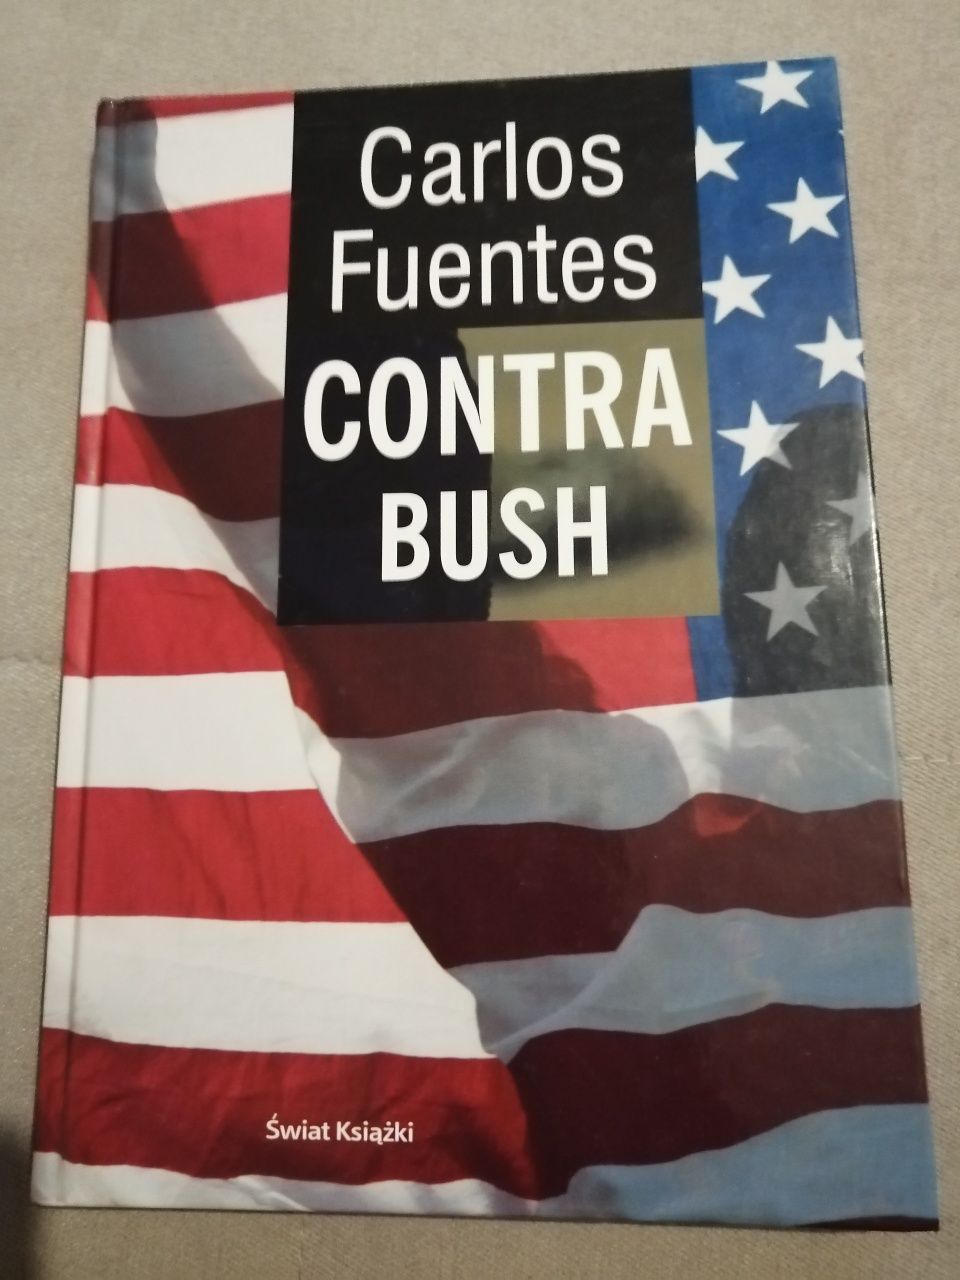 "Contra Bush" Carlos Fuentes